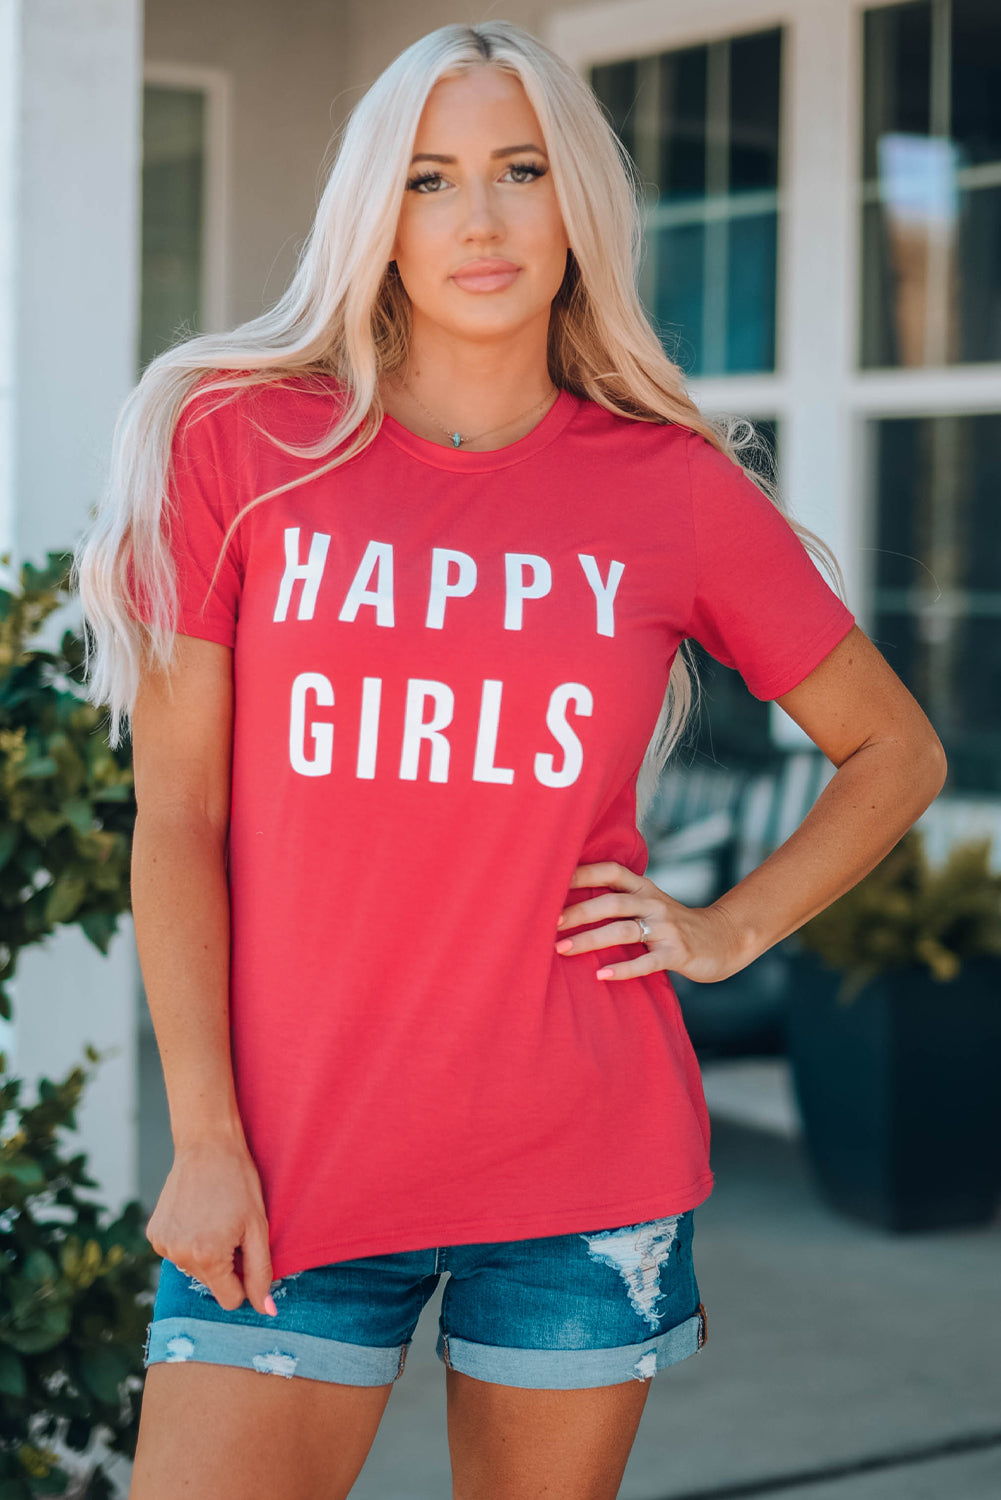 HAPPY GIRLS Short Sleeve Tee Shirt - 99fab 